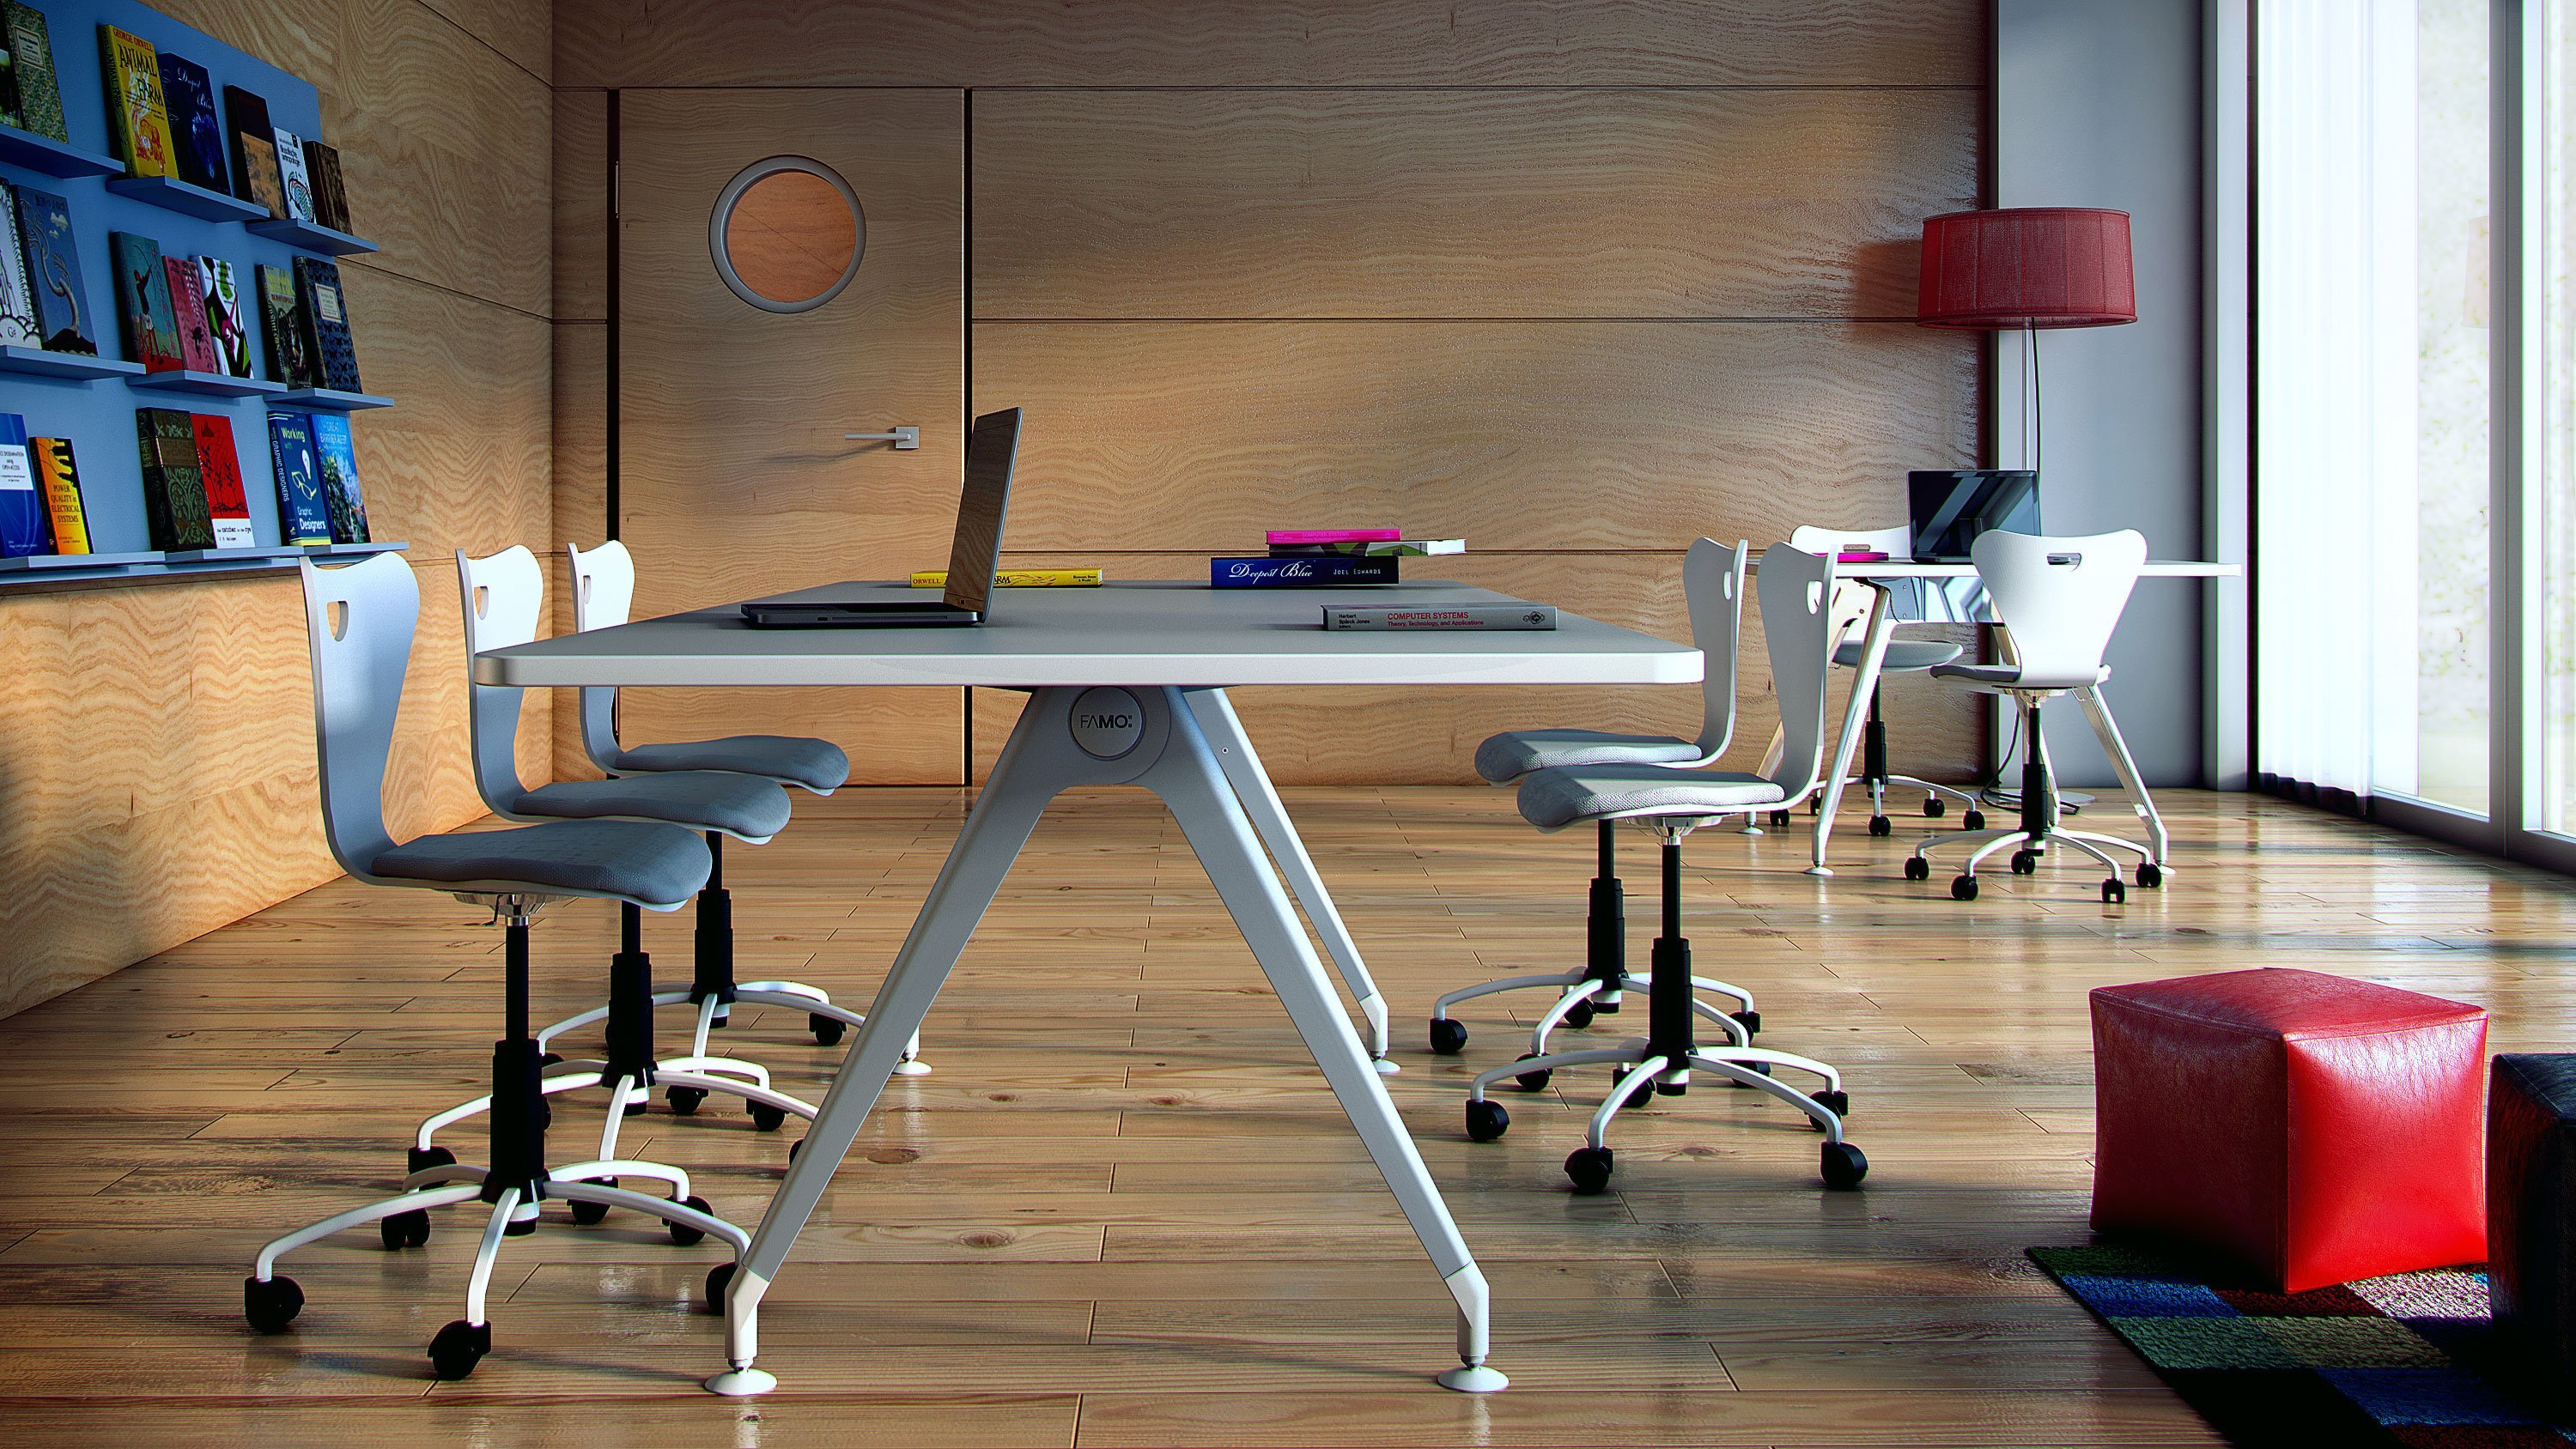 Обои на работе стол. Рабочий стол в офисе. Креативный стиль для офисного стола. Обои на рабочий стол работа в офисе. Офис стол фон.